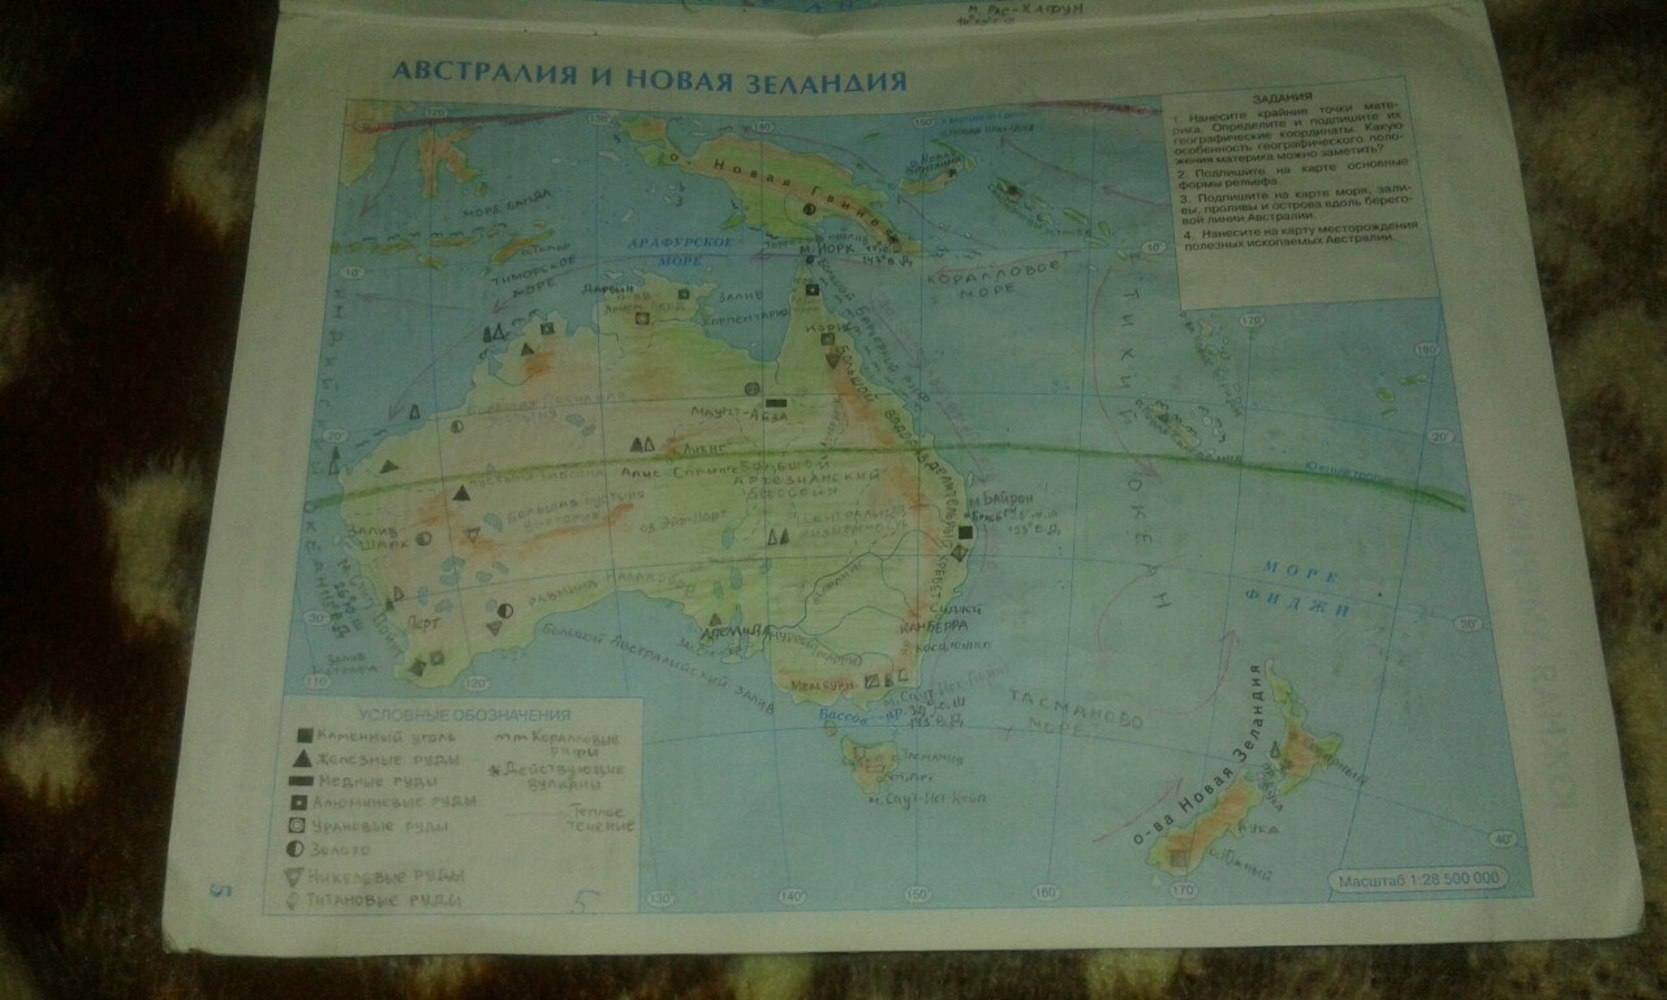 Австралия и океания 7 класс тест ответы. География 7 класс контурные карты Австралия и новая Зеландия. Гдз контурная карта Австралии новая Зеландия седьмой класс география. Контурная карта Австралии и новой Зеландии 7 класс номенклатура. Гдз по контурной карте по географии 7 класс Австралия и новая Зеландия.